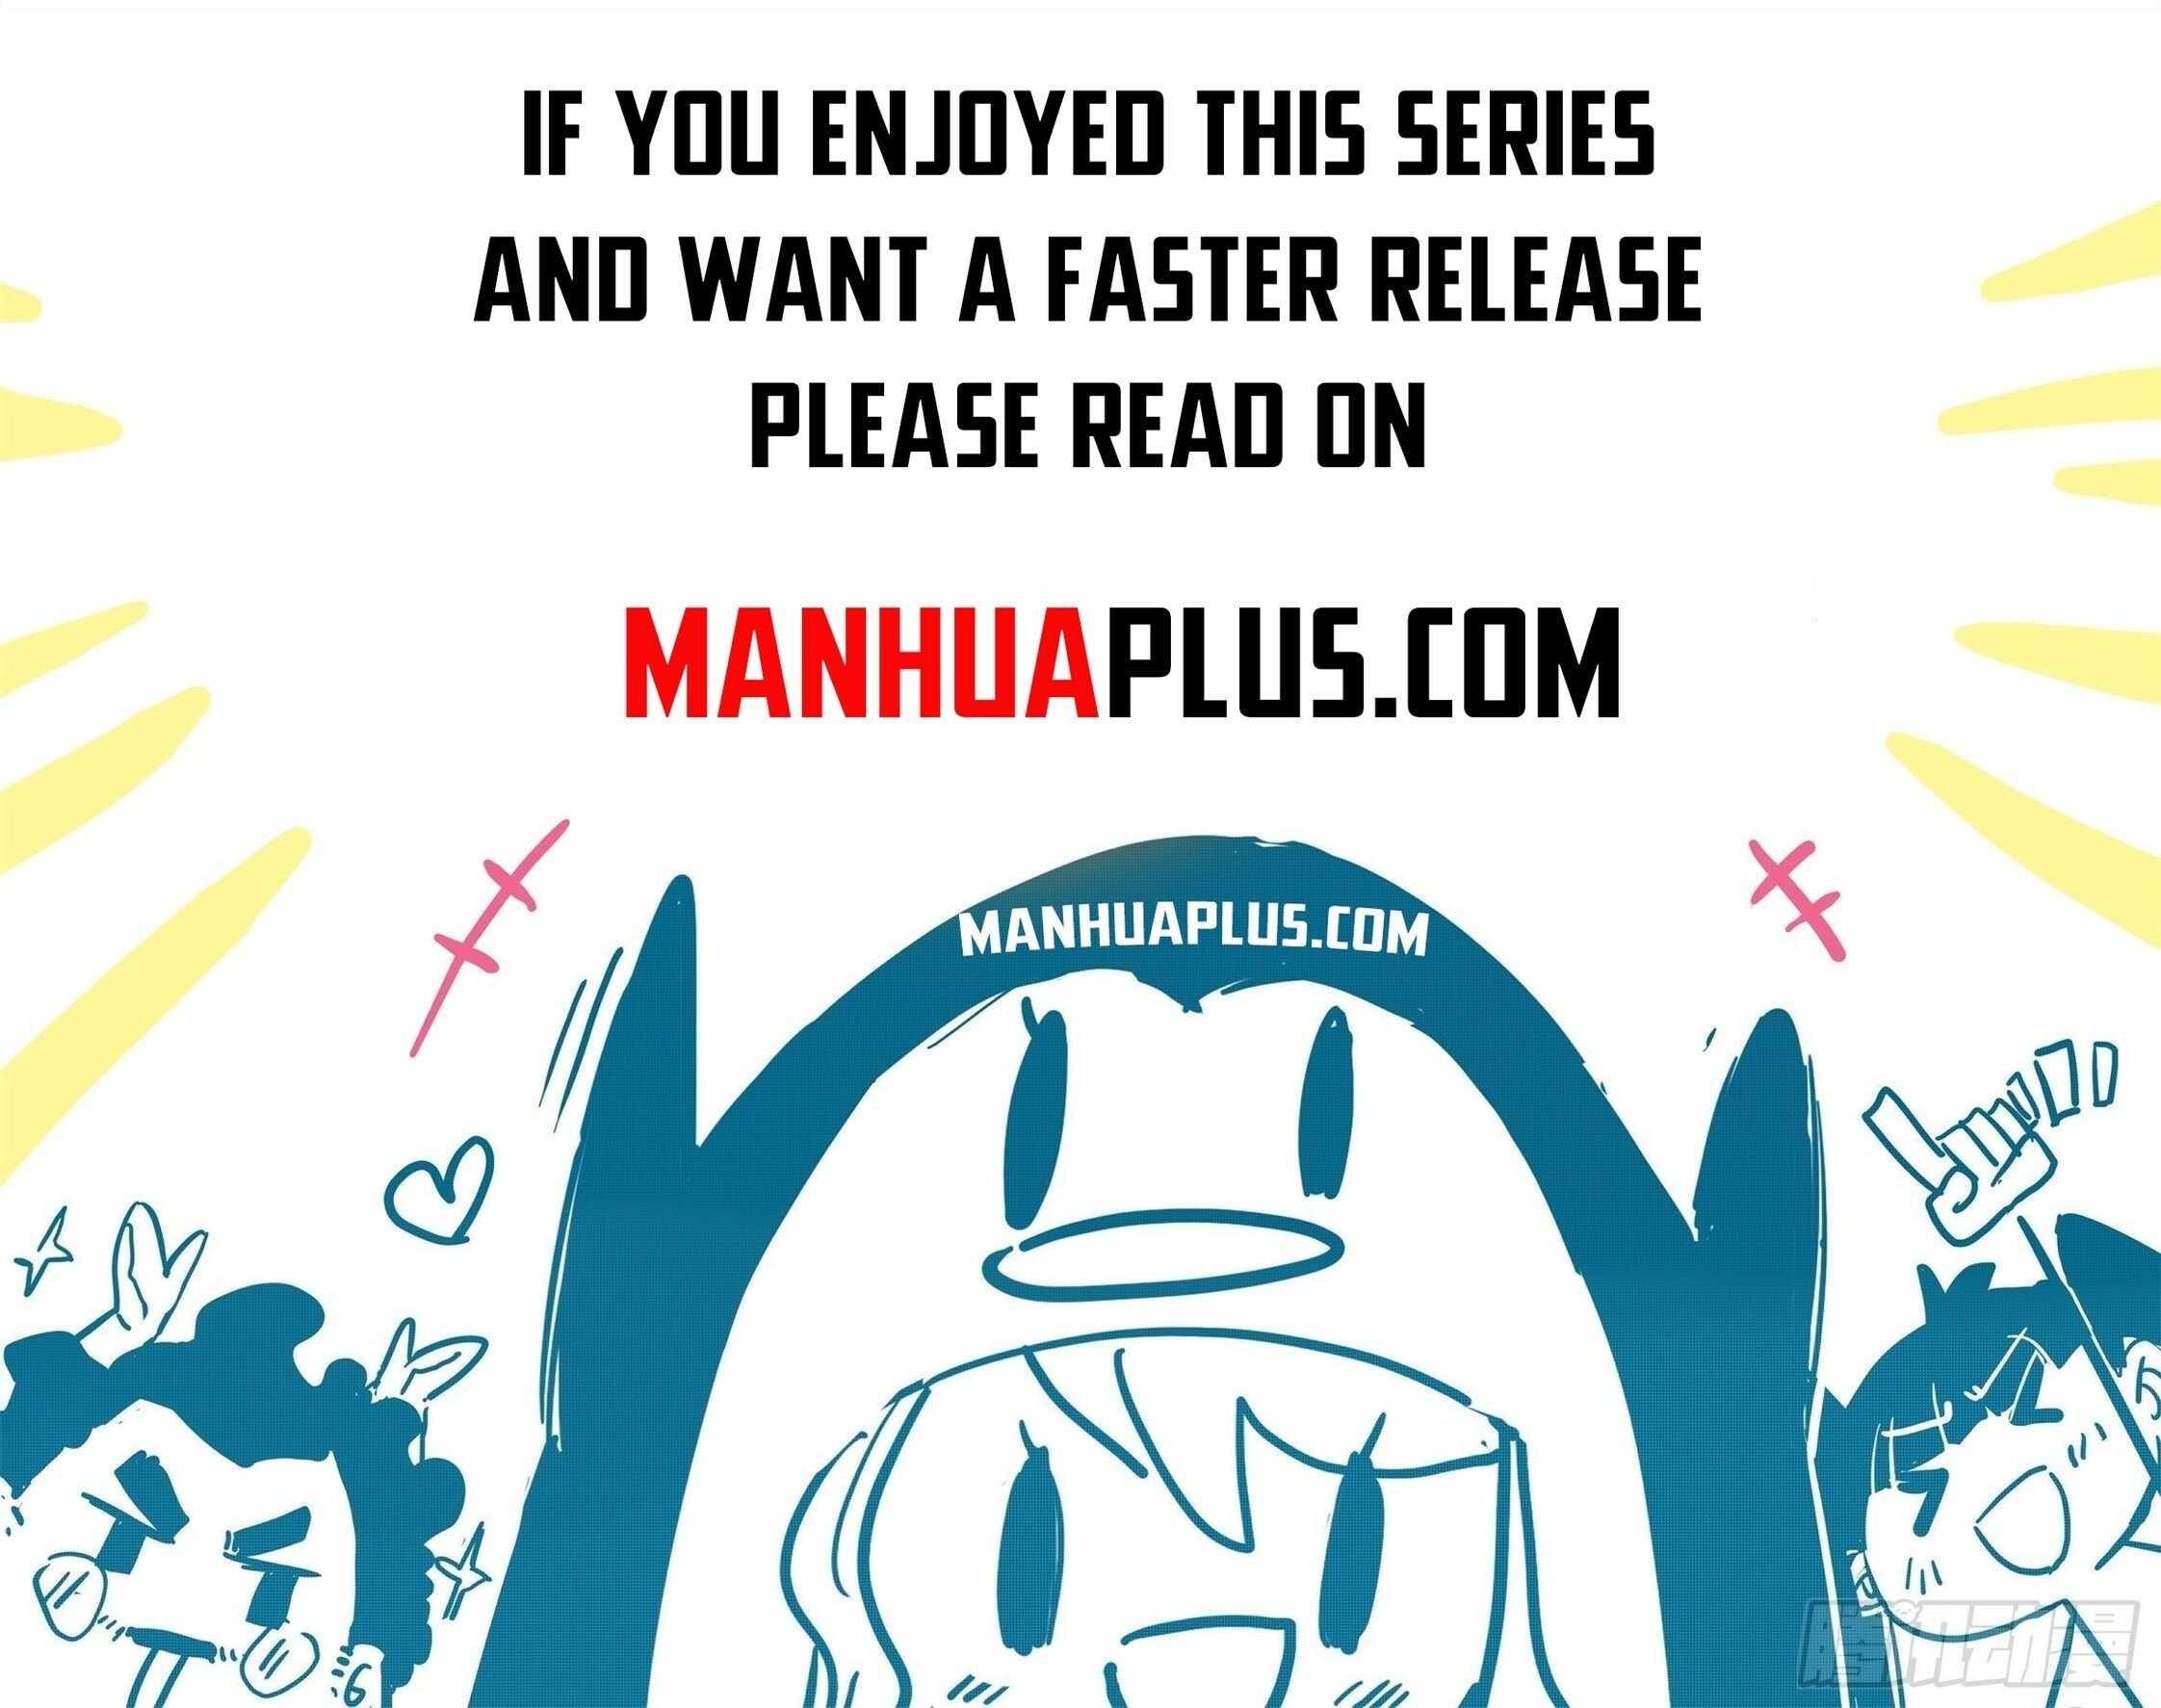 read I’m The Great Immortal Chapter 631 Manga Online Free at Mangabuddy, MangaNato,Manhwatop | MangaSo.com